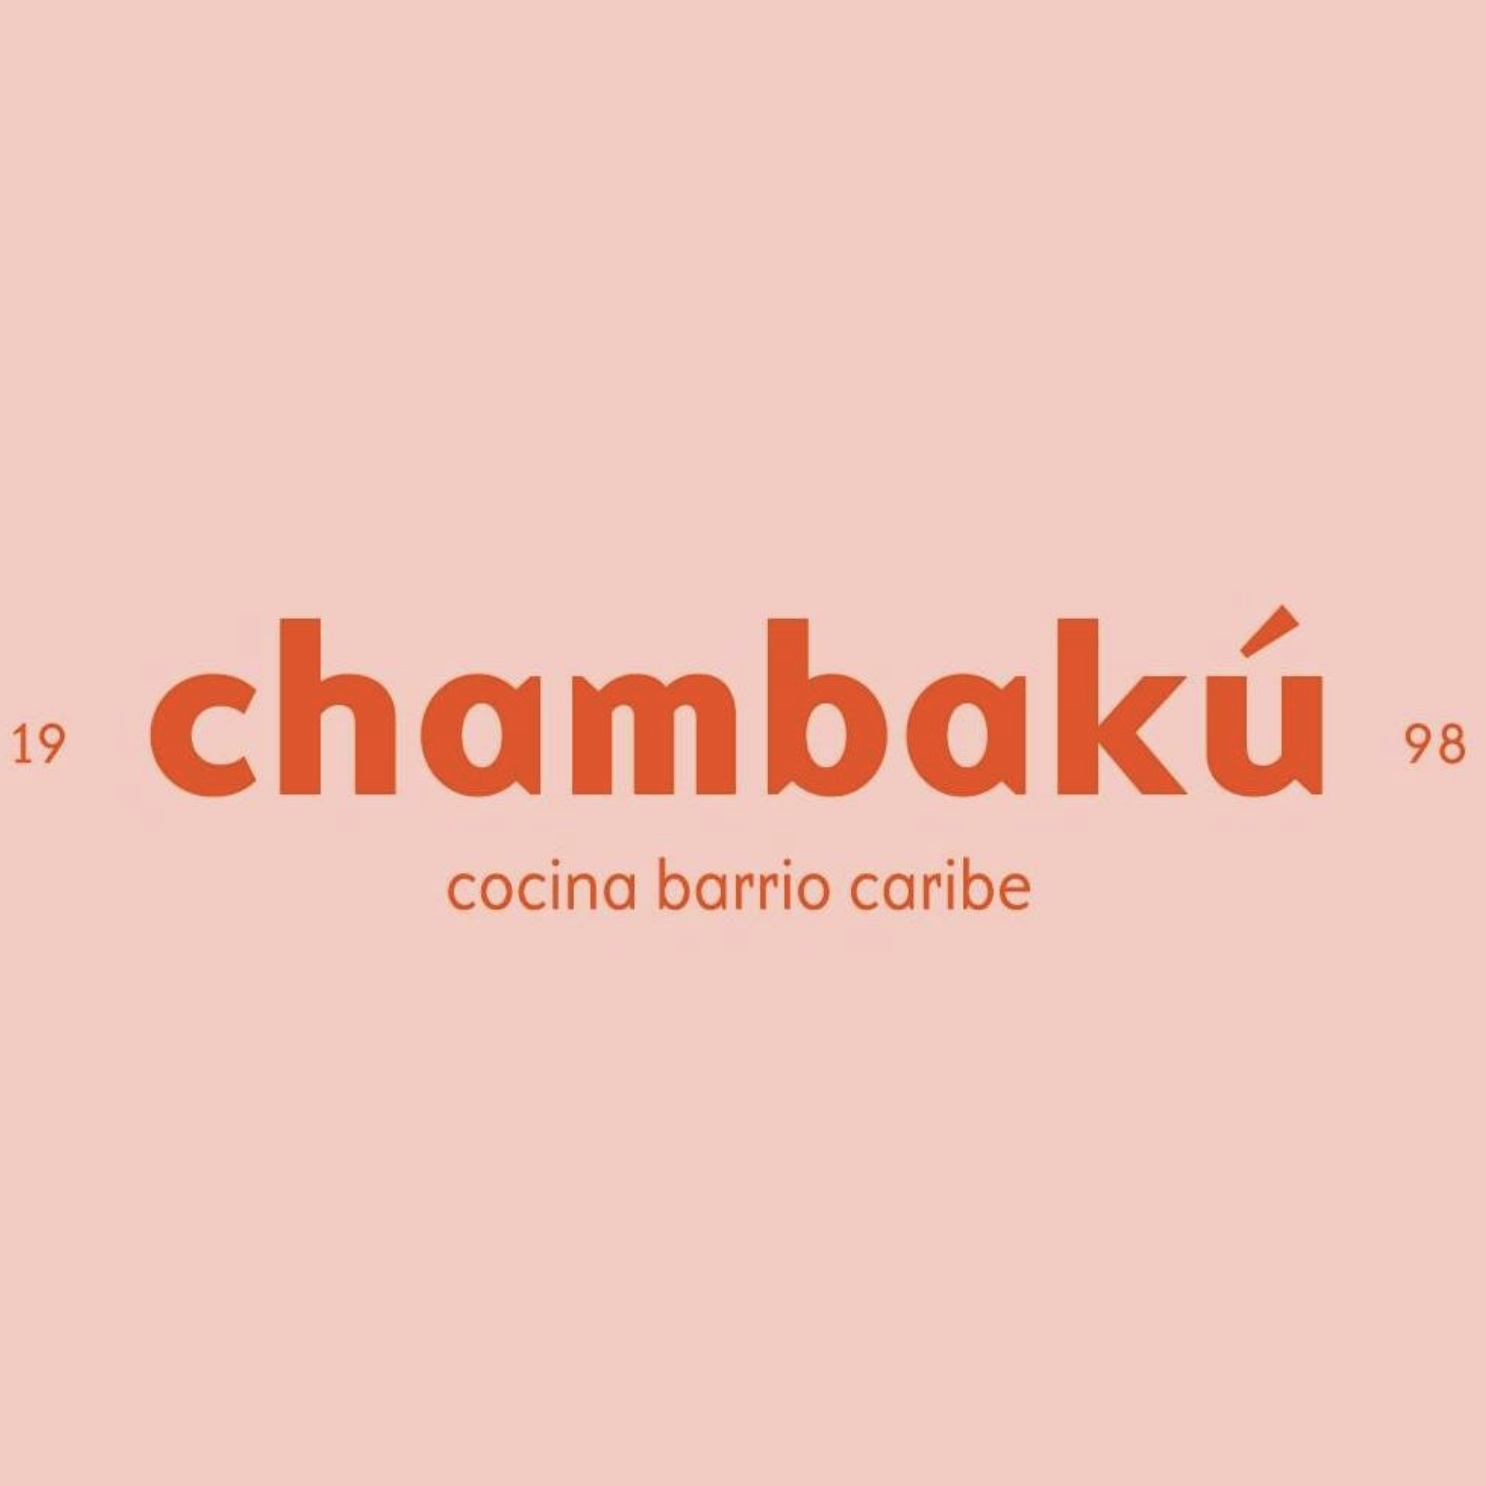 Chambaku